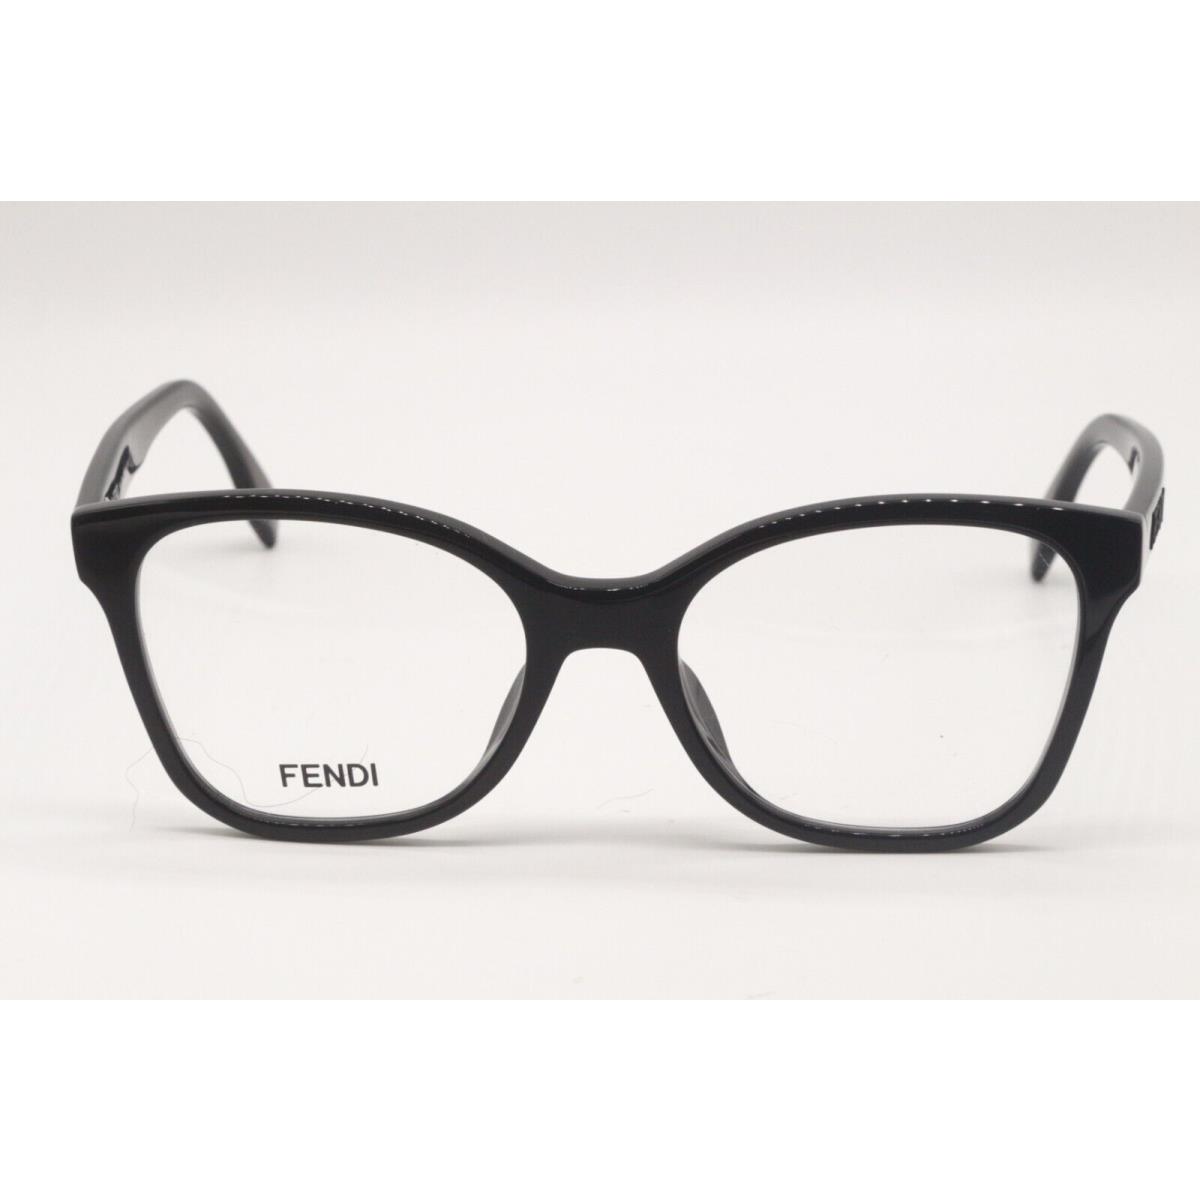 Fendi eyeglasses  - BLACK GOLD Frame